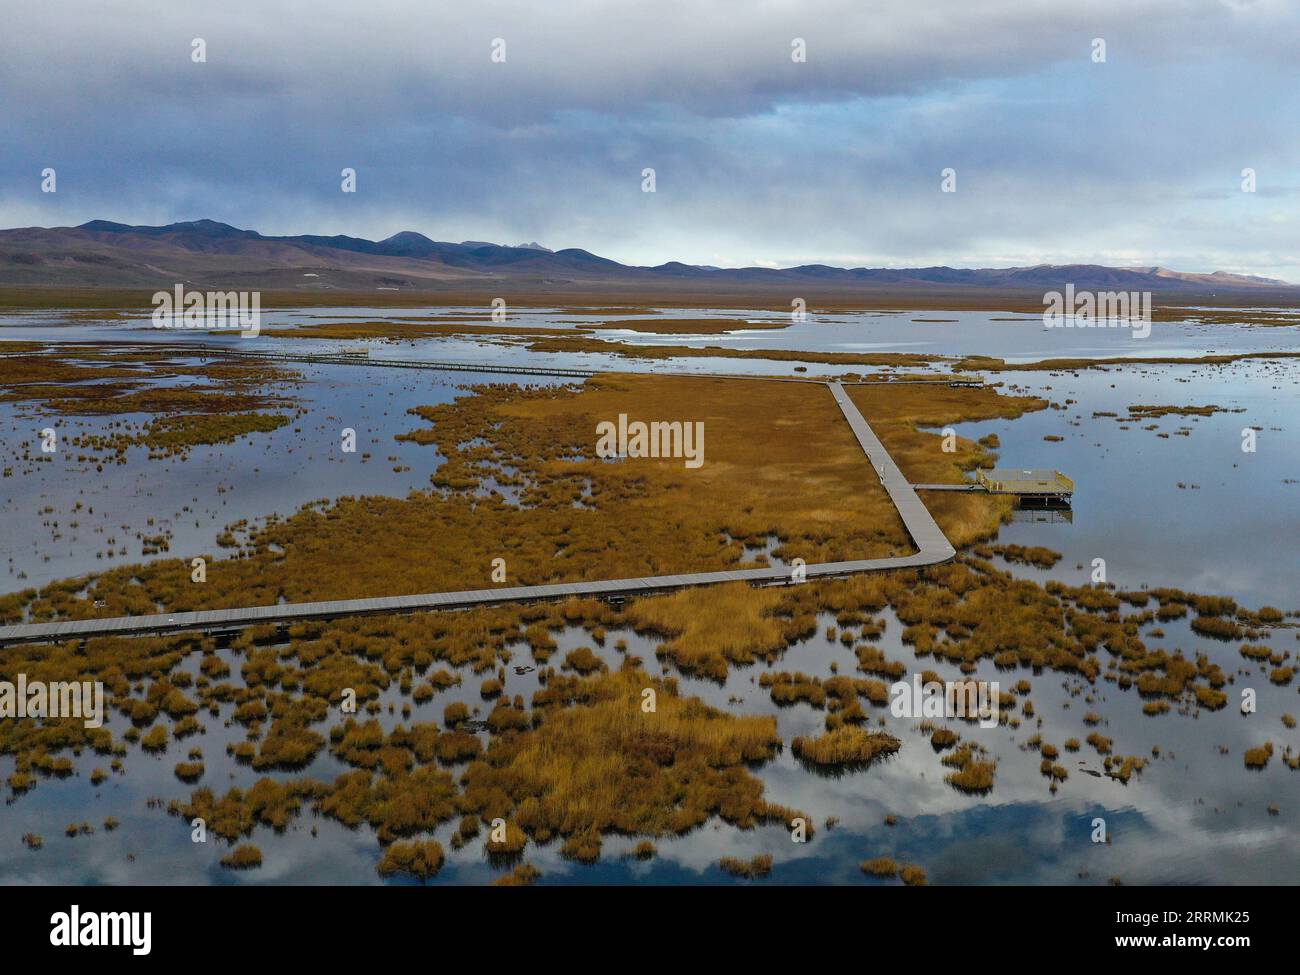 221103 -- ABA, 3 novembre 2022 -- questa foto aerea scattata il 18 ottobre 2022 mostra una vista della zona umida del lago Huahu nella contea di Ruoergai della prefettura autonoma di Aba Tibetan-Qiang, nella provincia del Sichuan della Cina sud-occidentale. La riserva naturale nazionale delle paludi di Ruoergai è stata istituita per proteggere l'ecosistema locale delle paludi torbiere e specie rare come la gru a collo nero. Nota per le vaste praterie punteggiate da tortuosi fiumi, laghi e paludi, questa riserva naturale è diventata una a livello nazionale nel 1998 ed è stata designata come zona umida di importanza internazionale nel 2008. L'ambiente ecologico di un Foto Stock